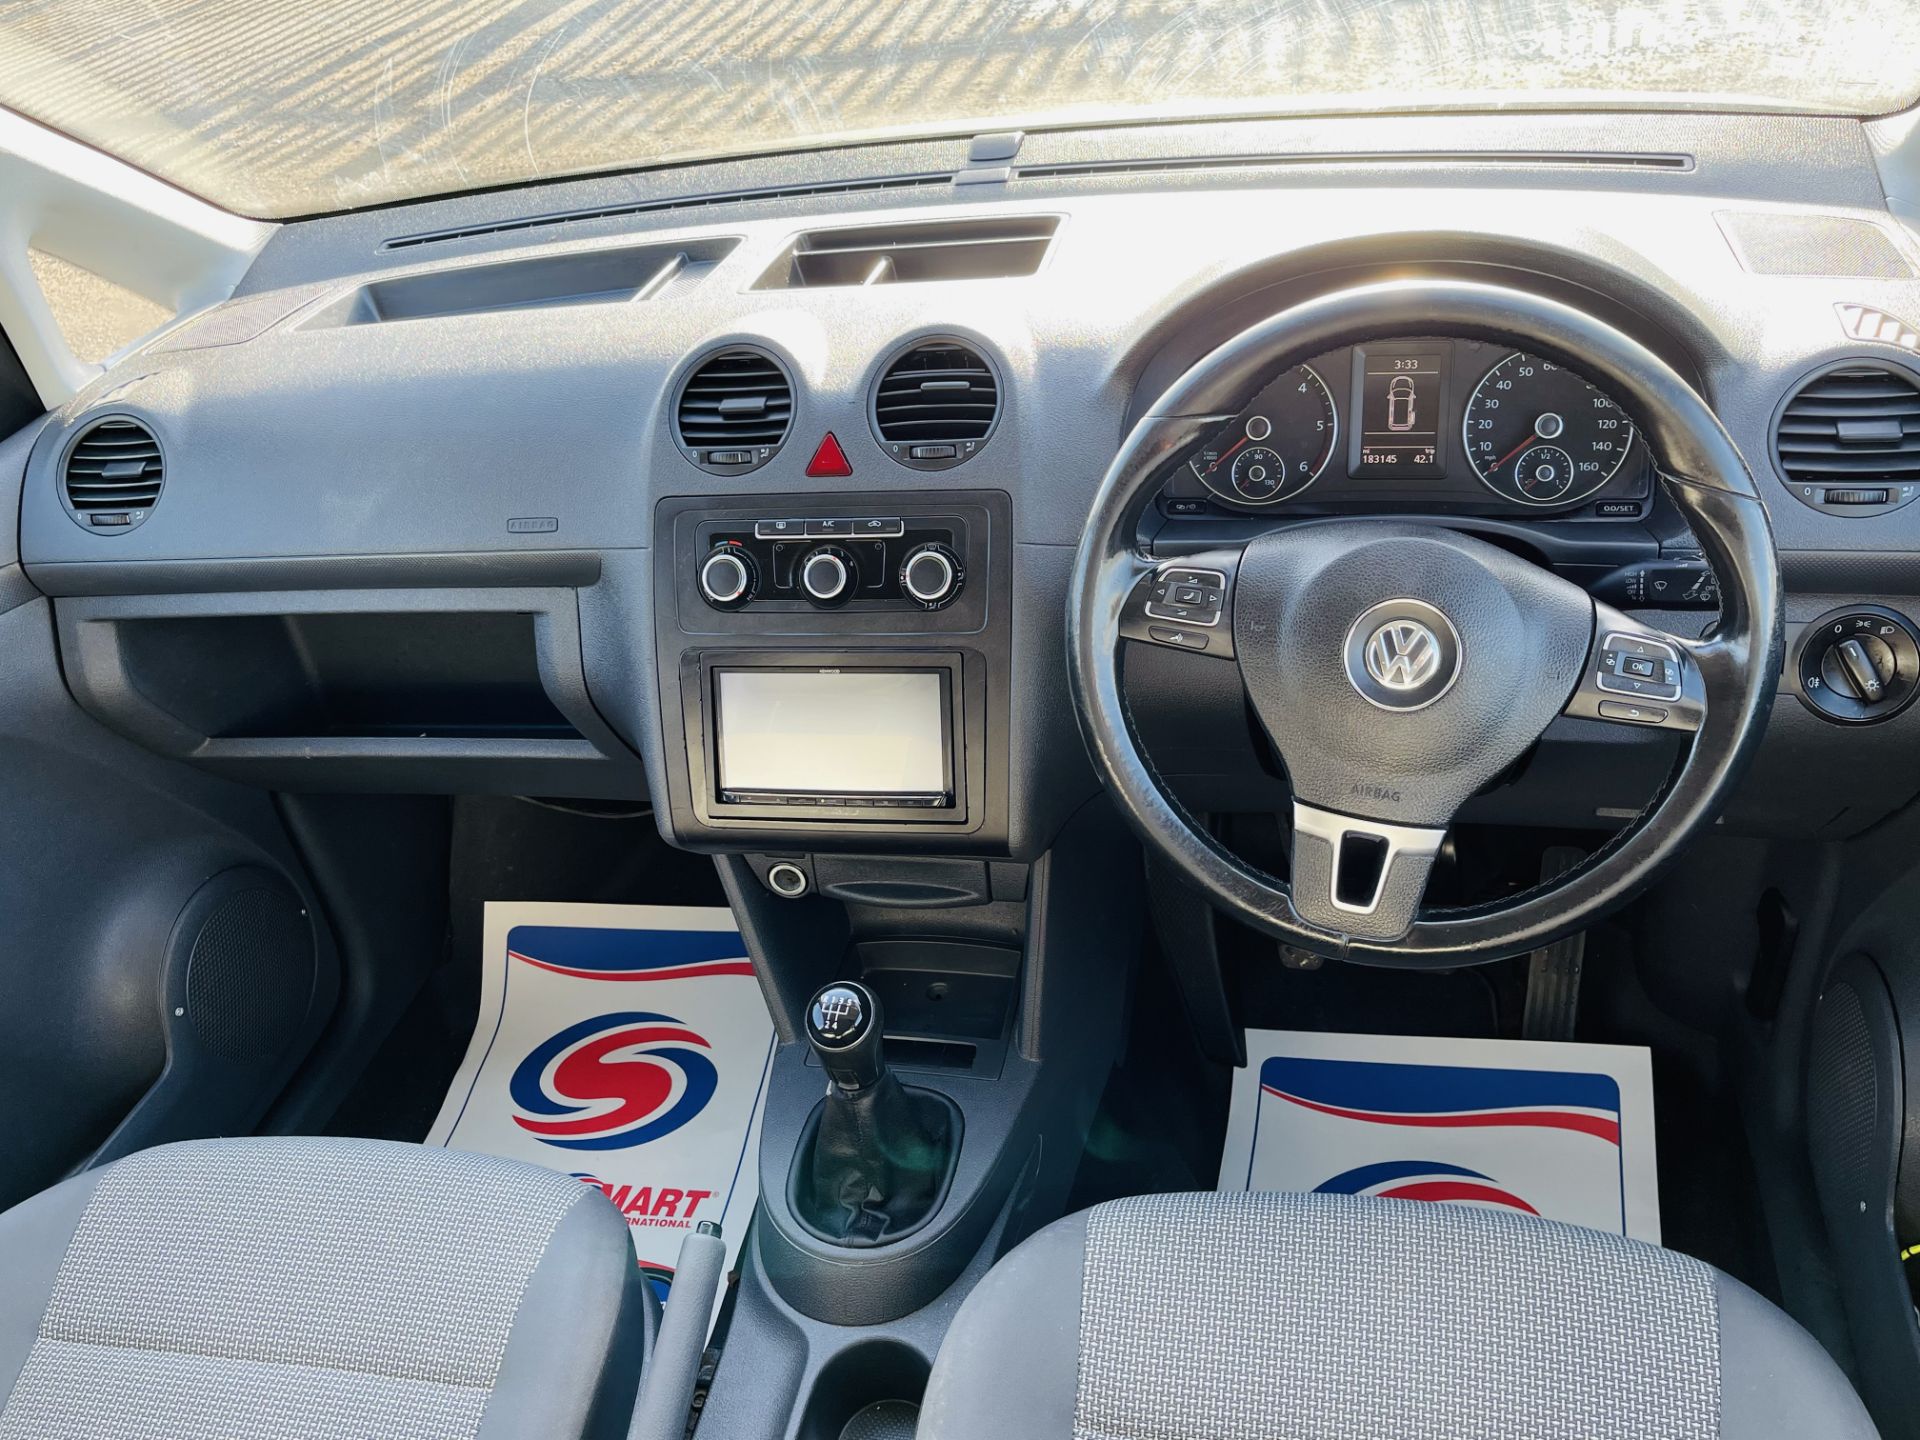 Volkswagen Caddy 1.6 TDI C20 Combi Maxi Dualiner 5 seats 2012 '62 Reg' Air Con - **Crew Van** - Image 22 of 29